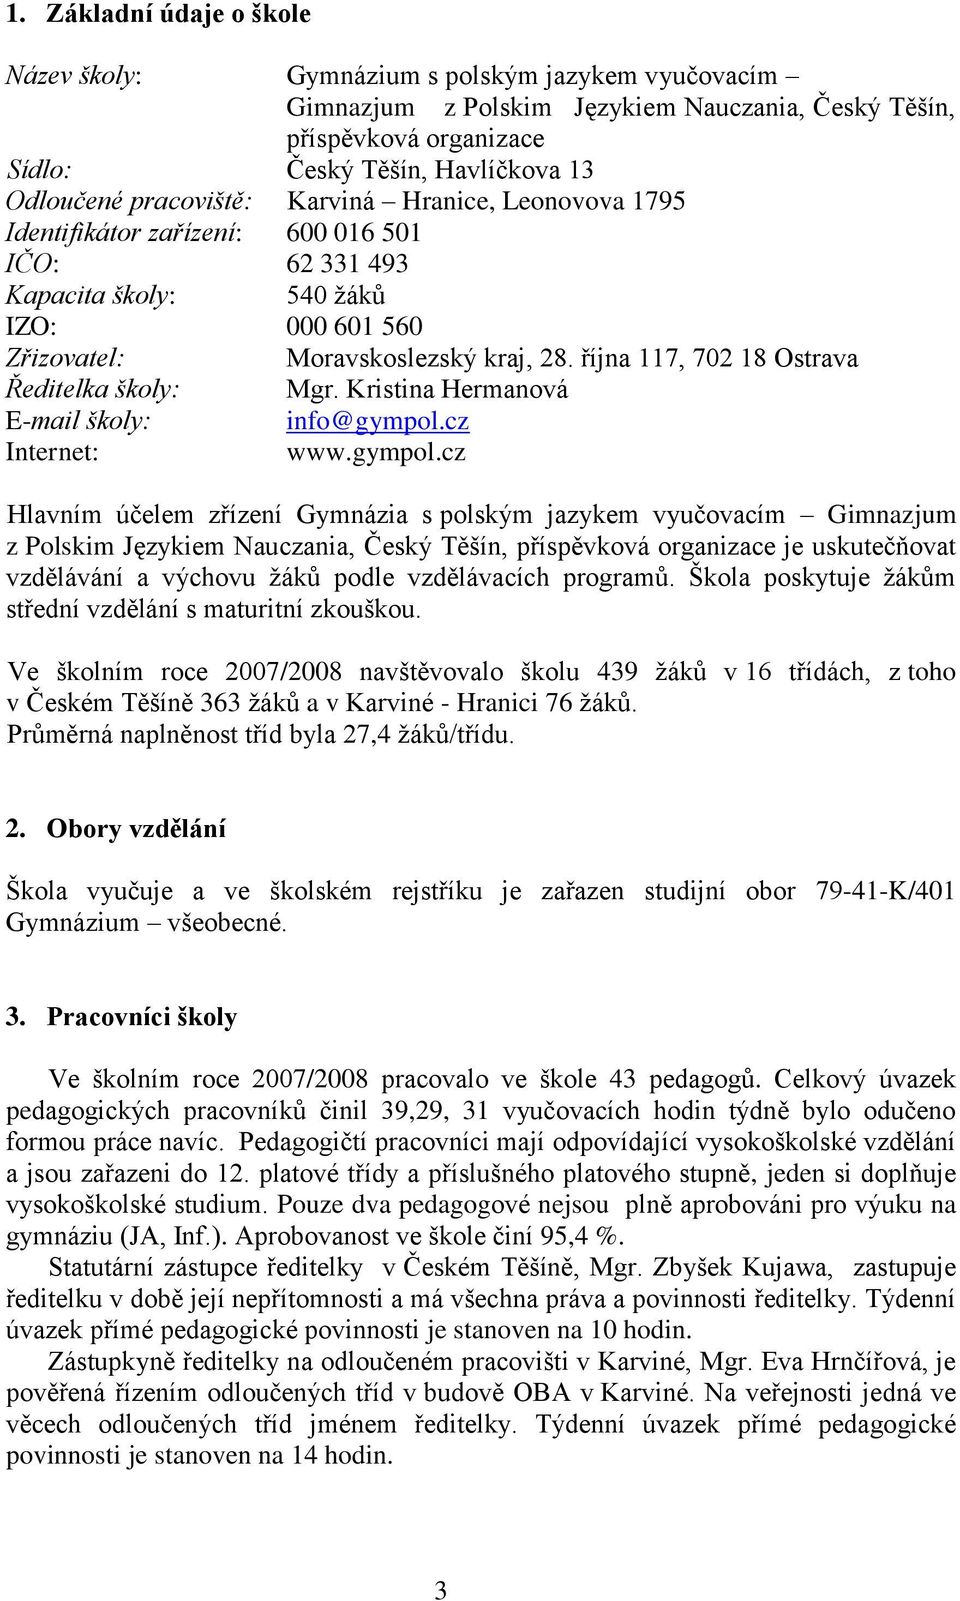 října 117, 702 18 Ostrava Ředitelka školy: Mgr. Kristina Hermanová E-mail školy: info@gympol.